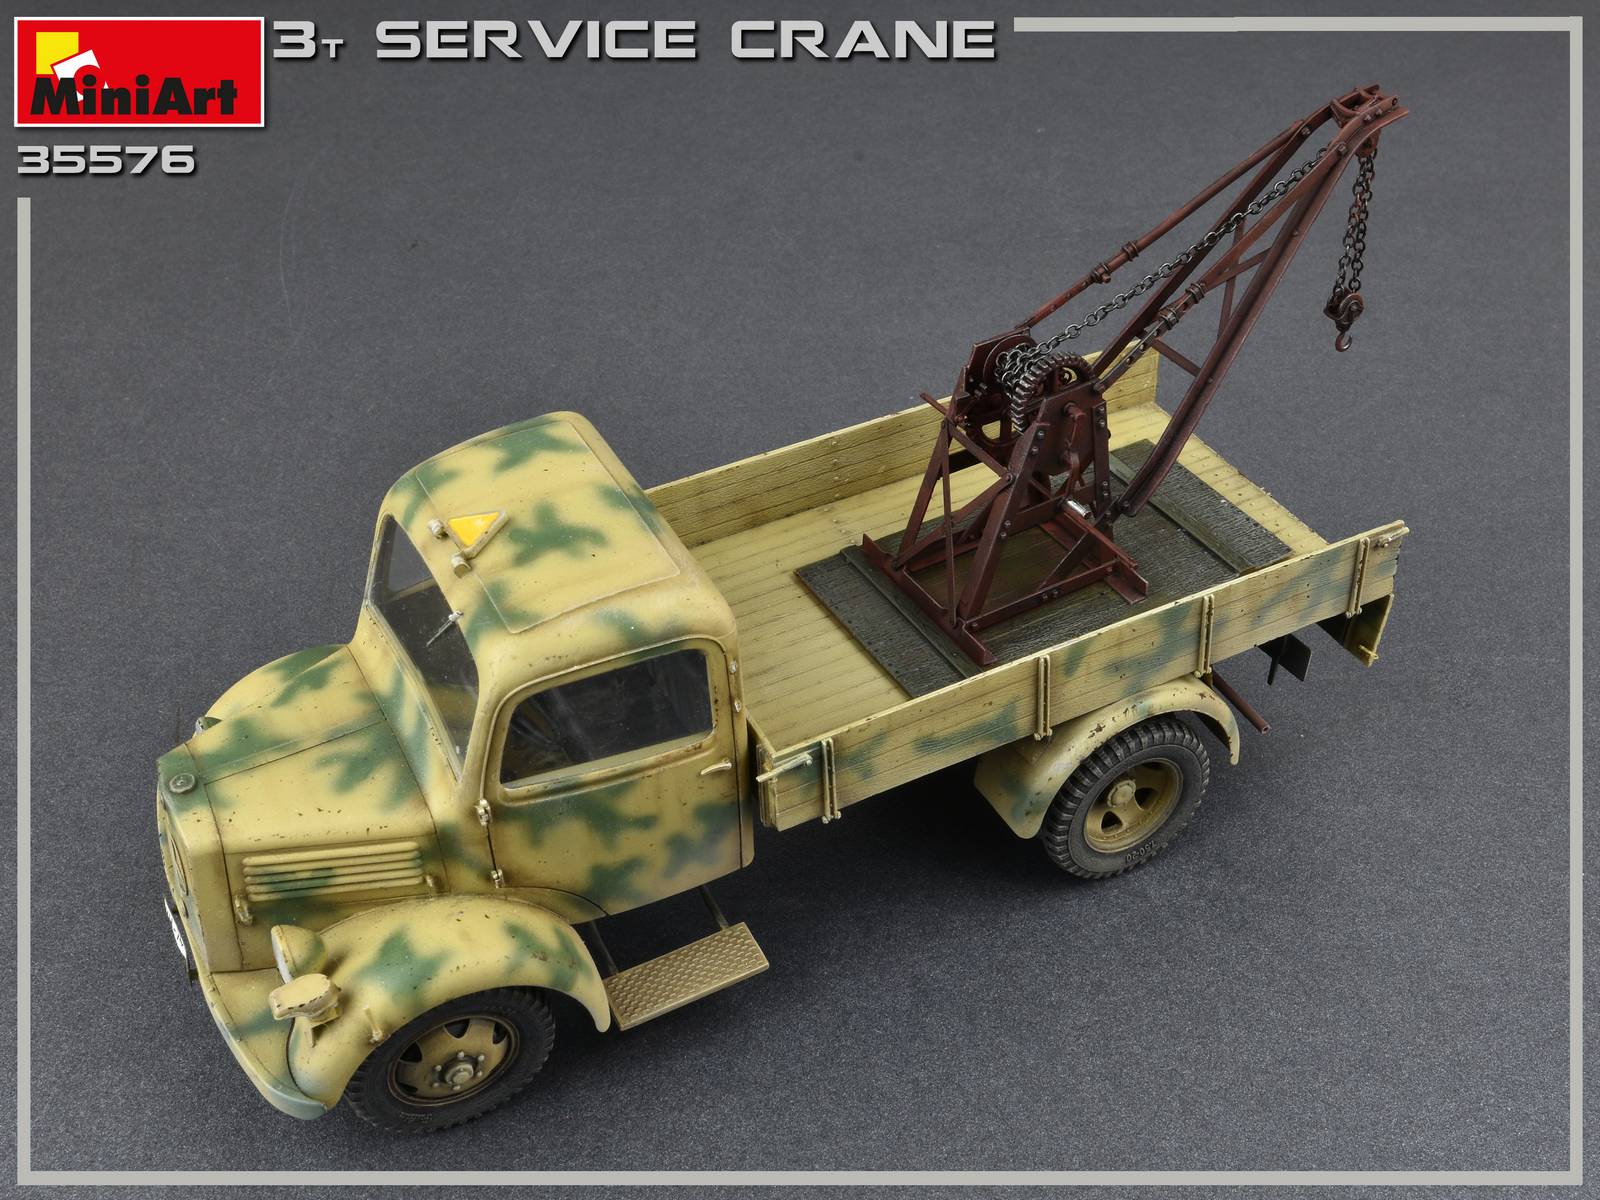 plastik model kit plastik model kit Miniart 35576-1:35 3 ton service crane 